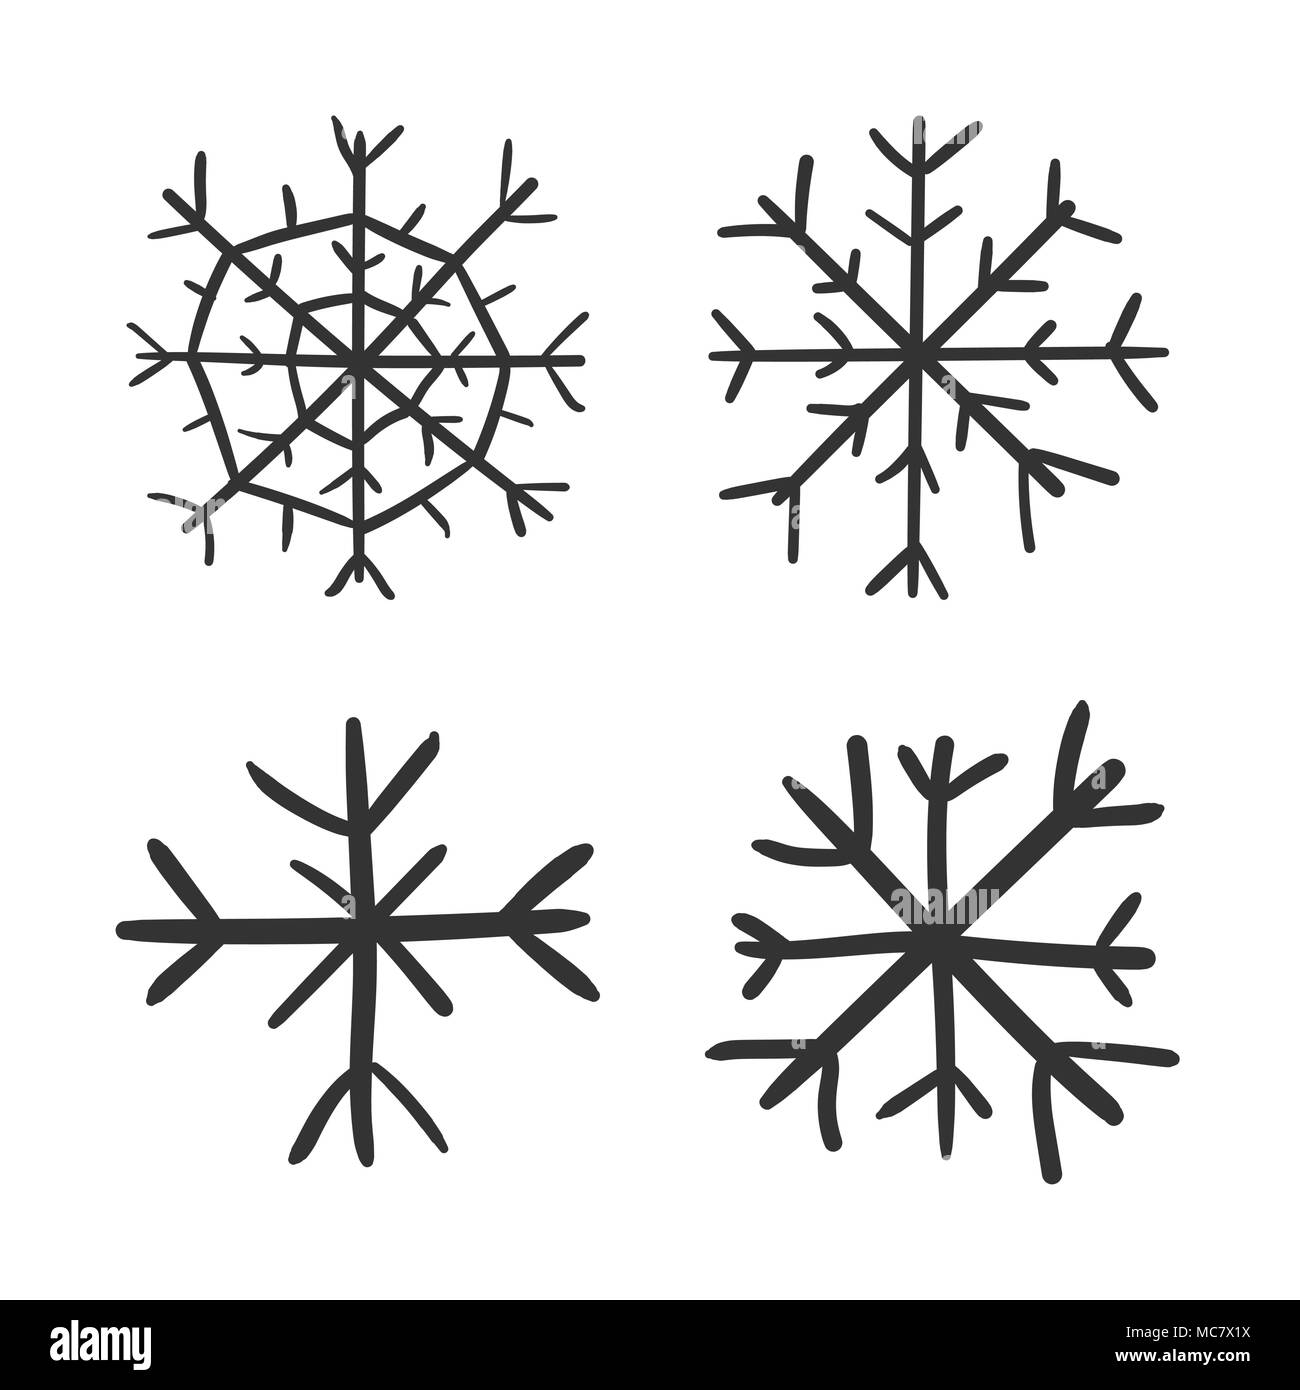 Симметрия снежинки рисунок карандашом